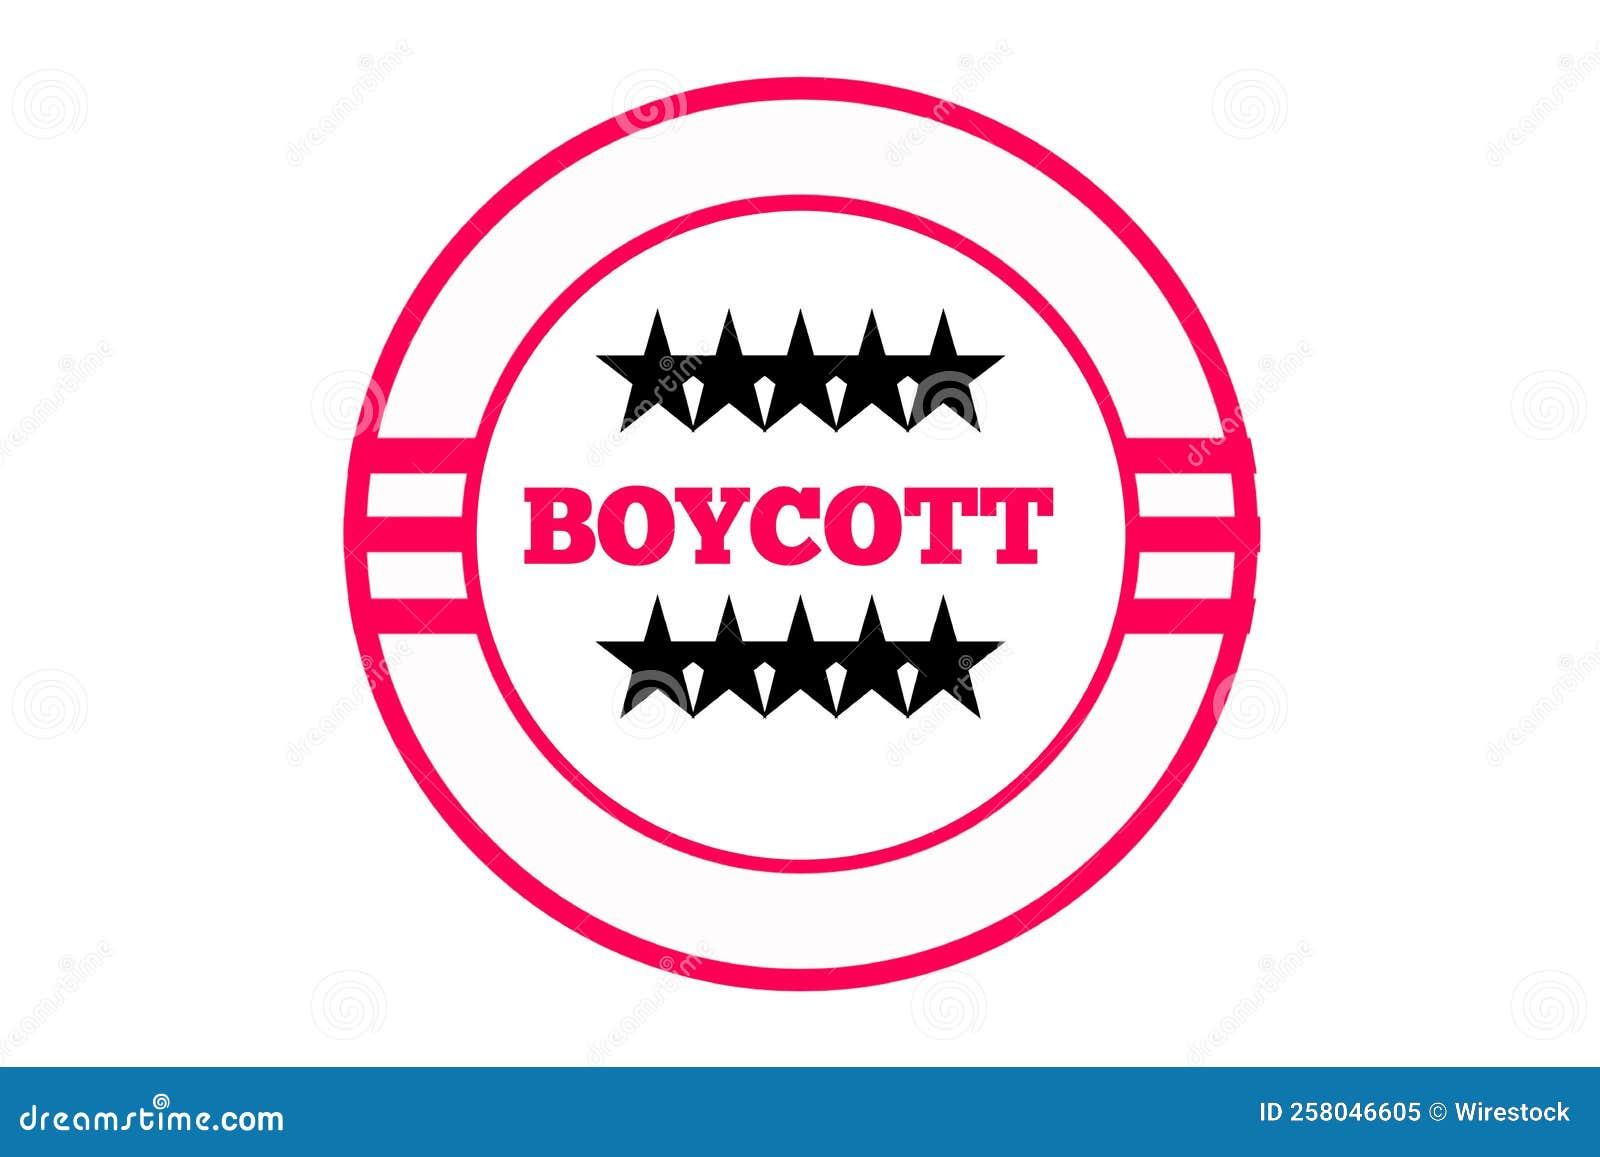 Share 142+ boycott logo latest